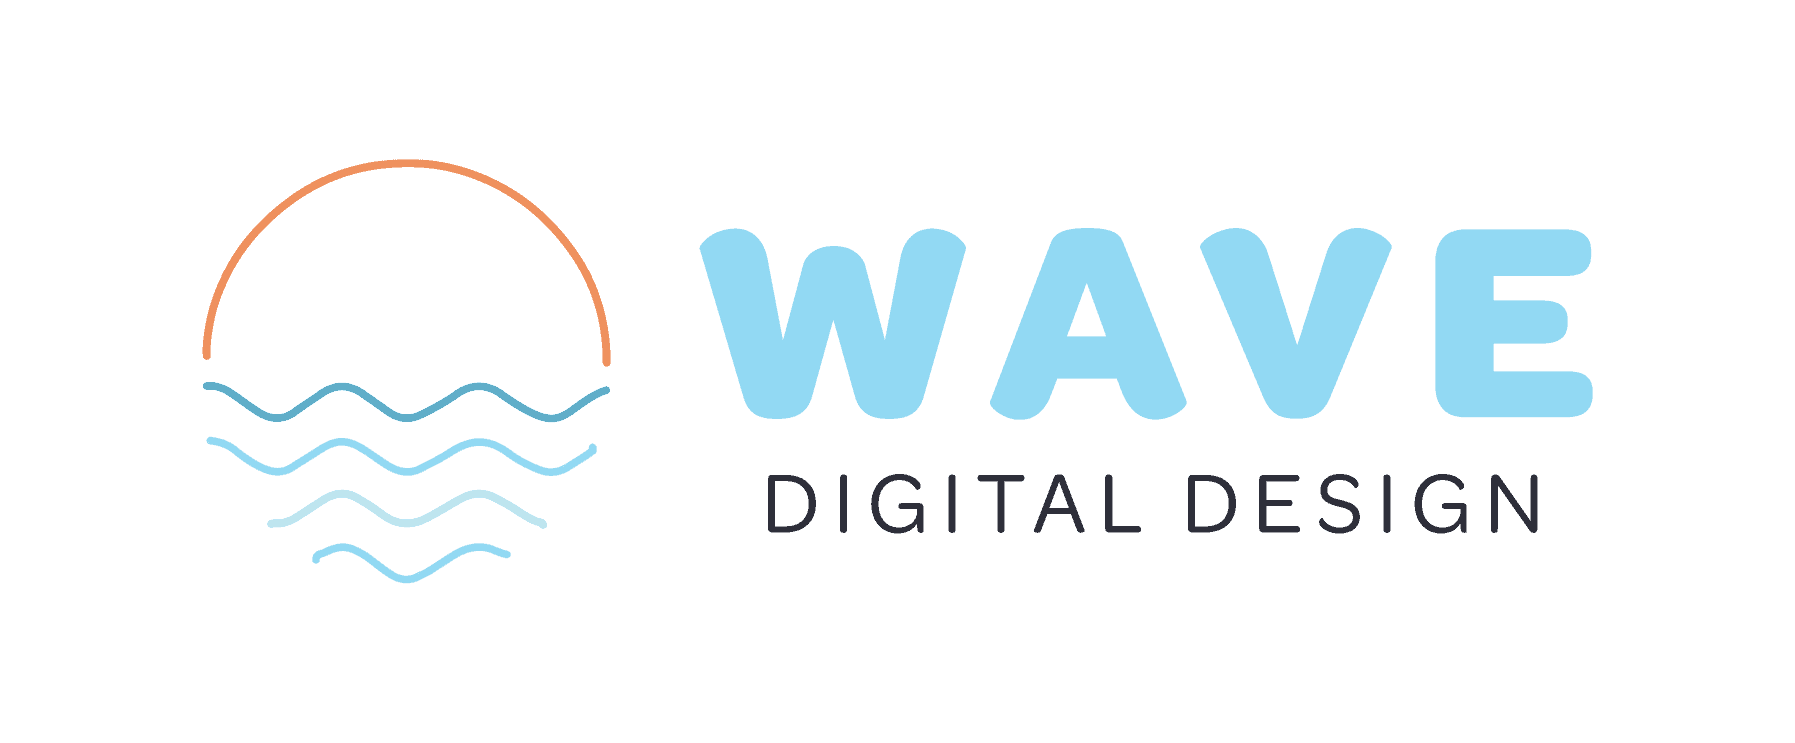 Wave digital web designer logo.